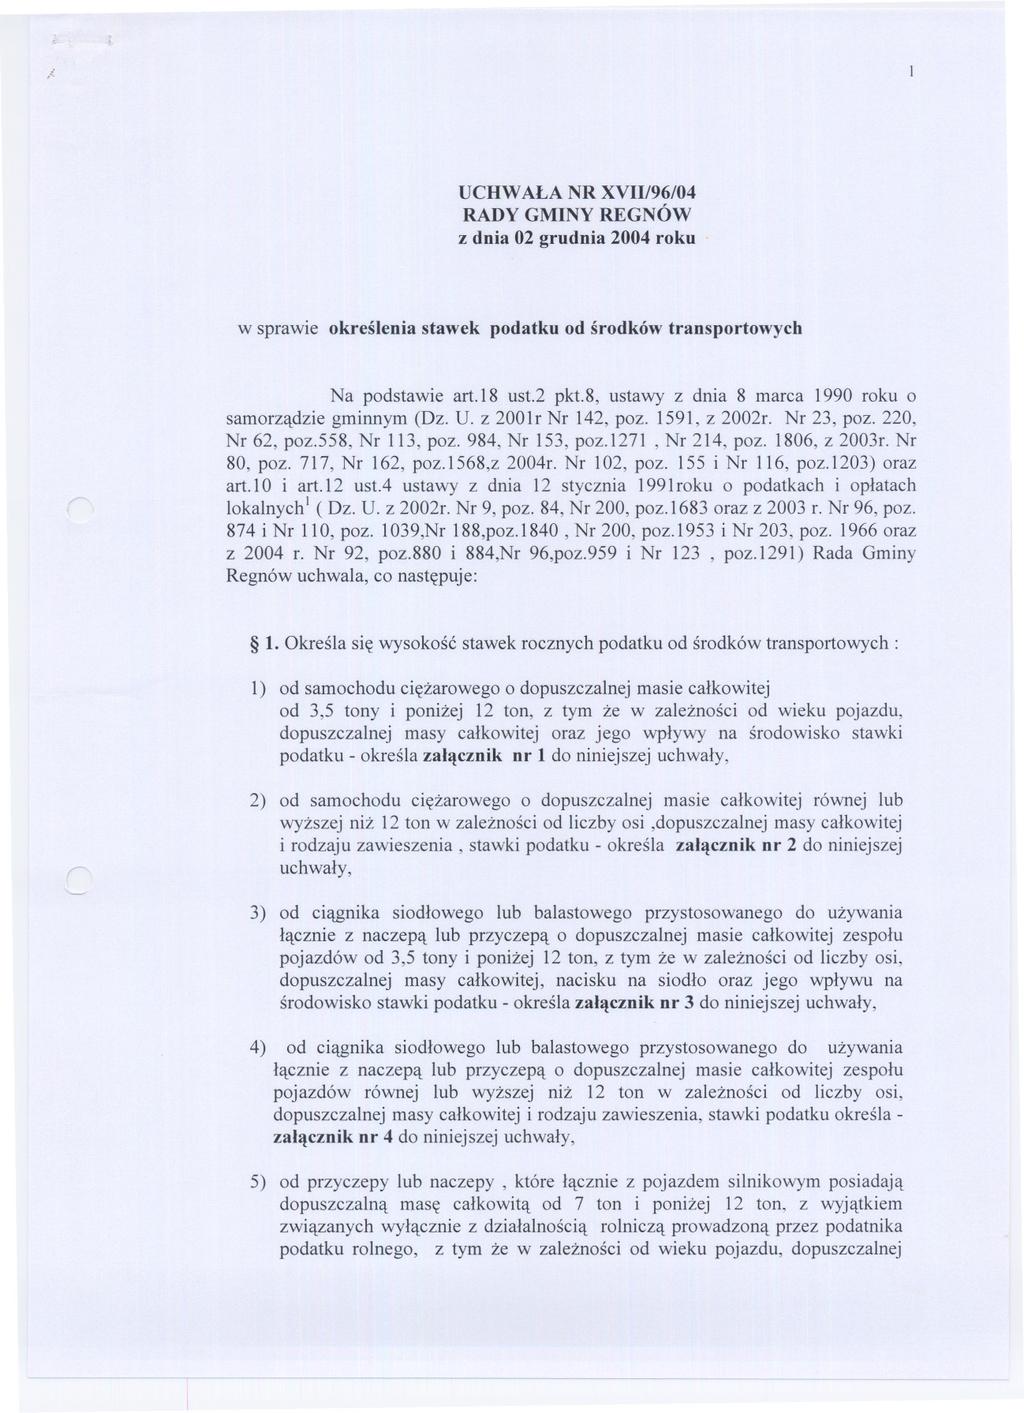 ;- UCHWALA NR XVII/96/04 RADY GMINY REGNÓW z dnia 02 grudnia 2004 roku w sprawie okreslenia stawek podatku od srodków transportowych Na podstawie art.18 ust.2 pkt.